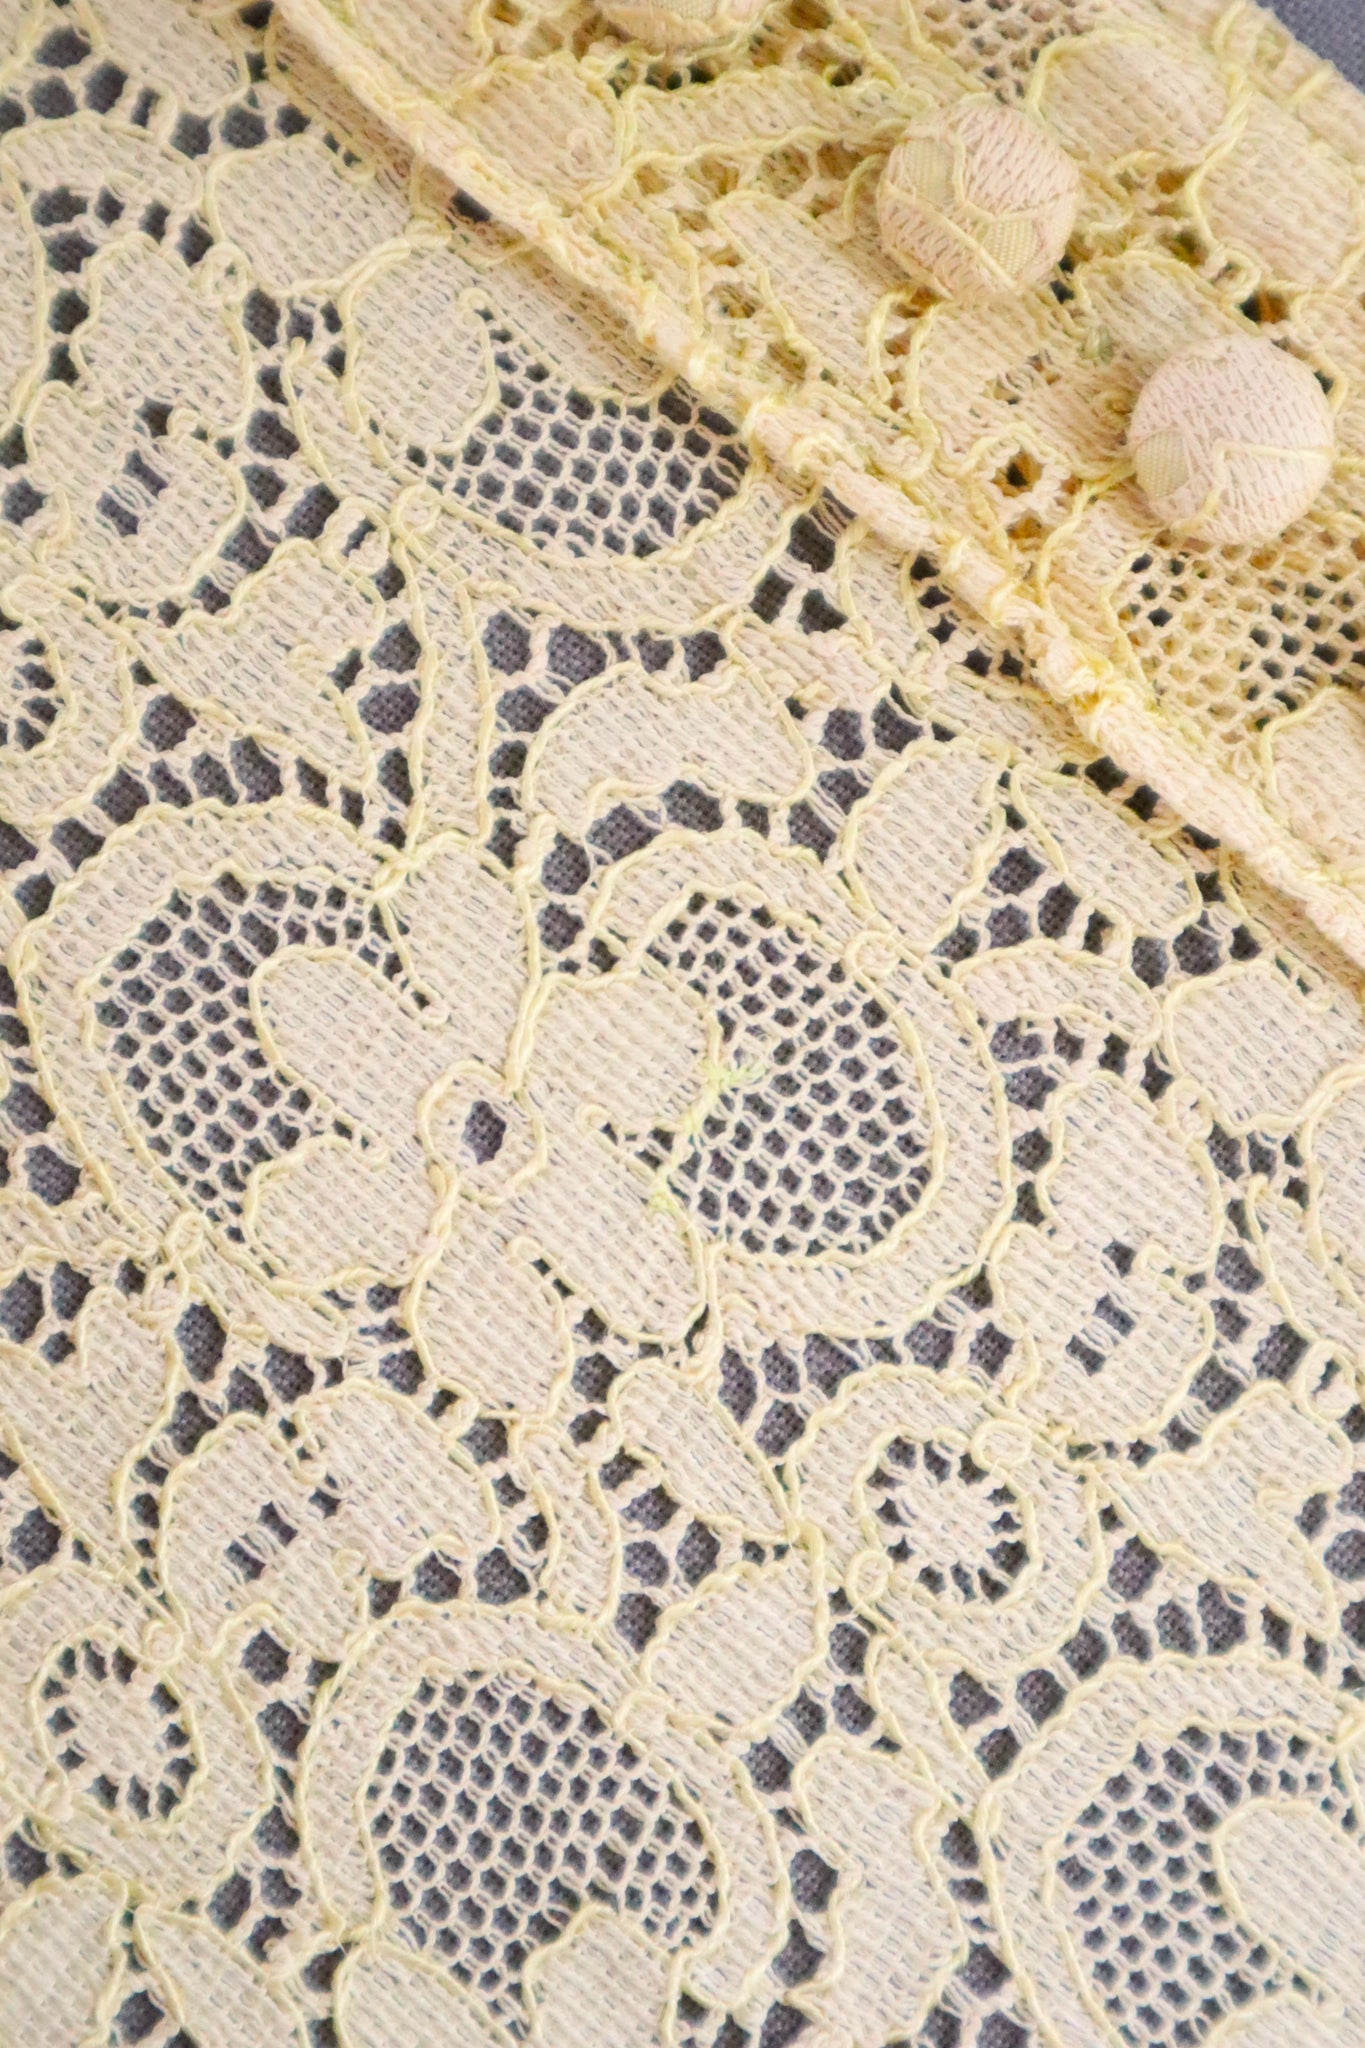 1940s Cotton Lace Dress Size S